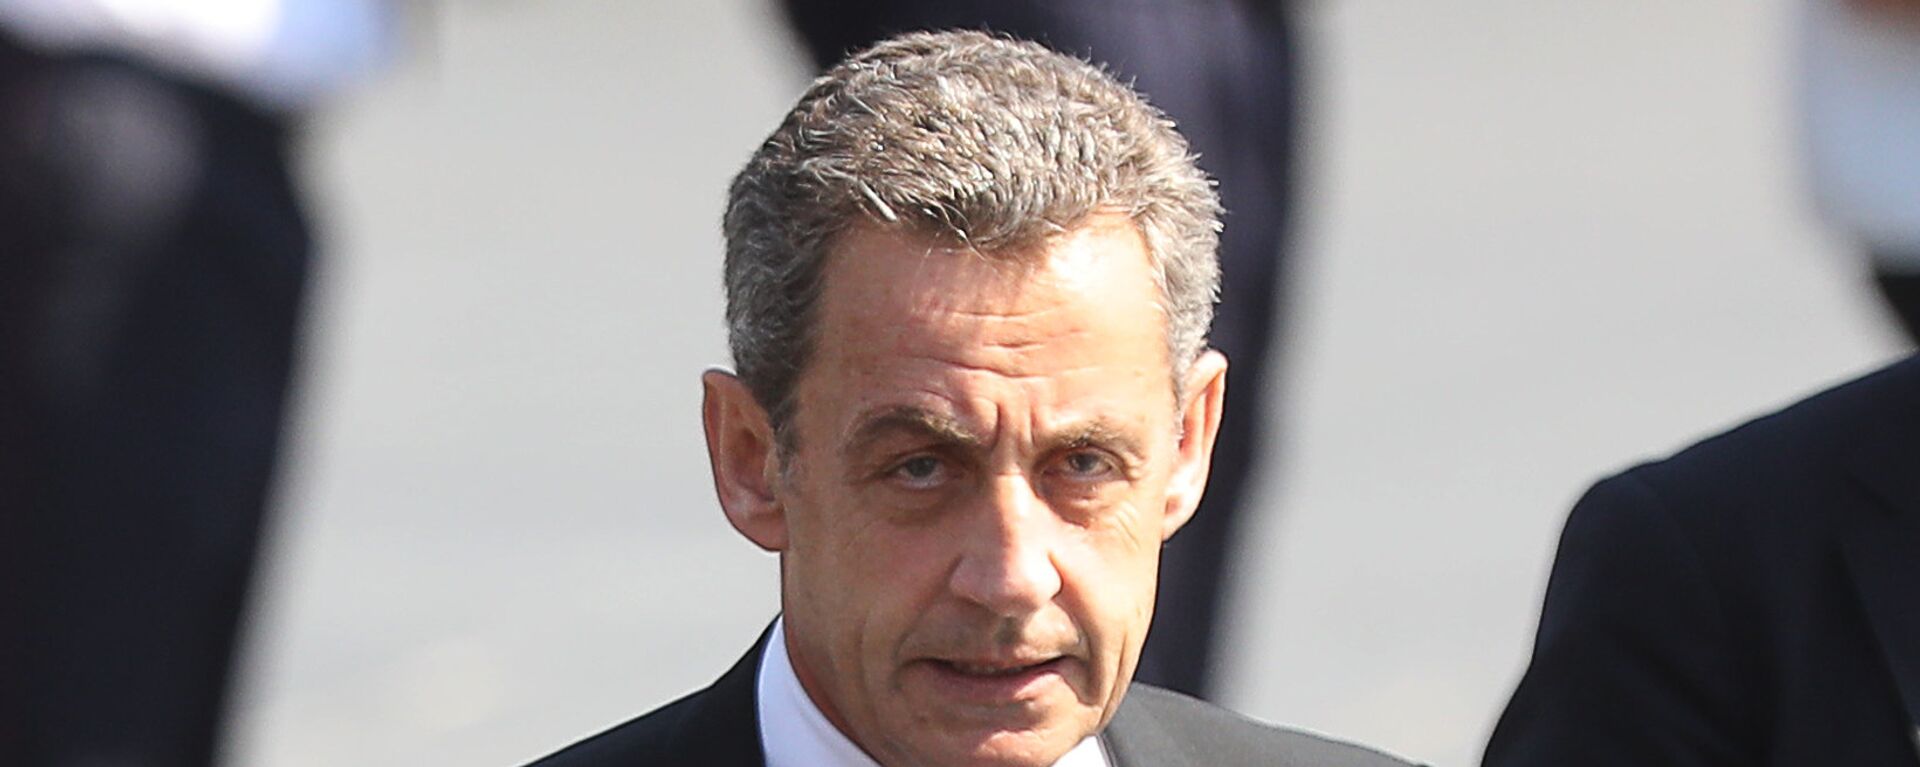 Eski Fransa Cumhurbaşkanı Nicolas Sarkozy - Sputnik Türkiye, 1920, 01.03.2021